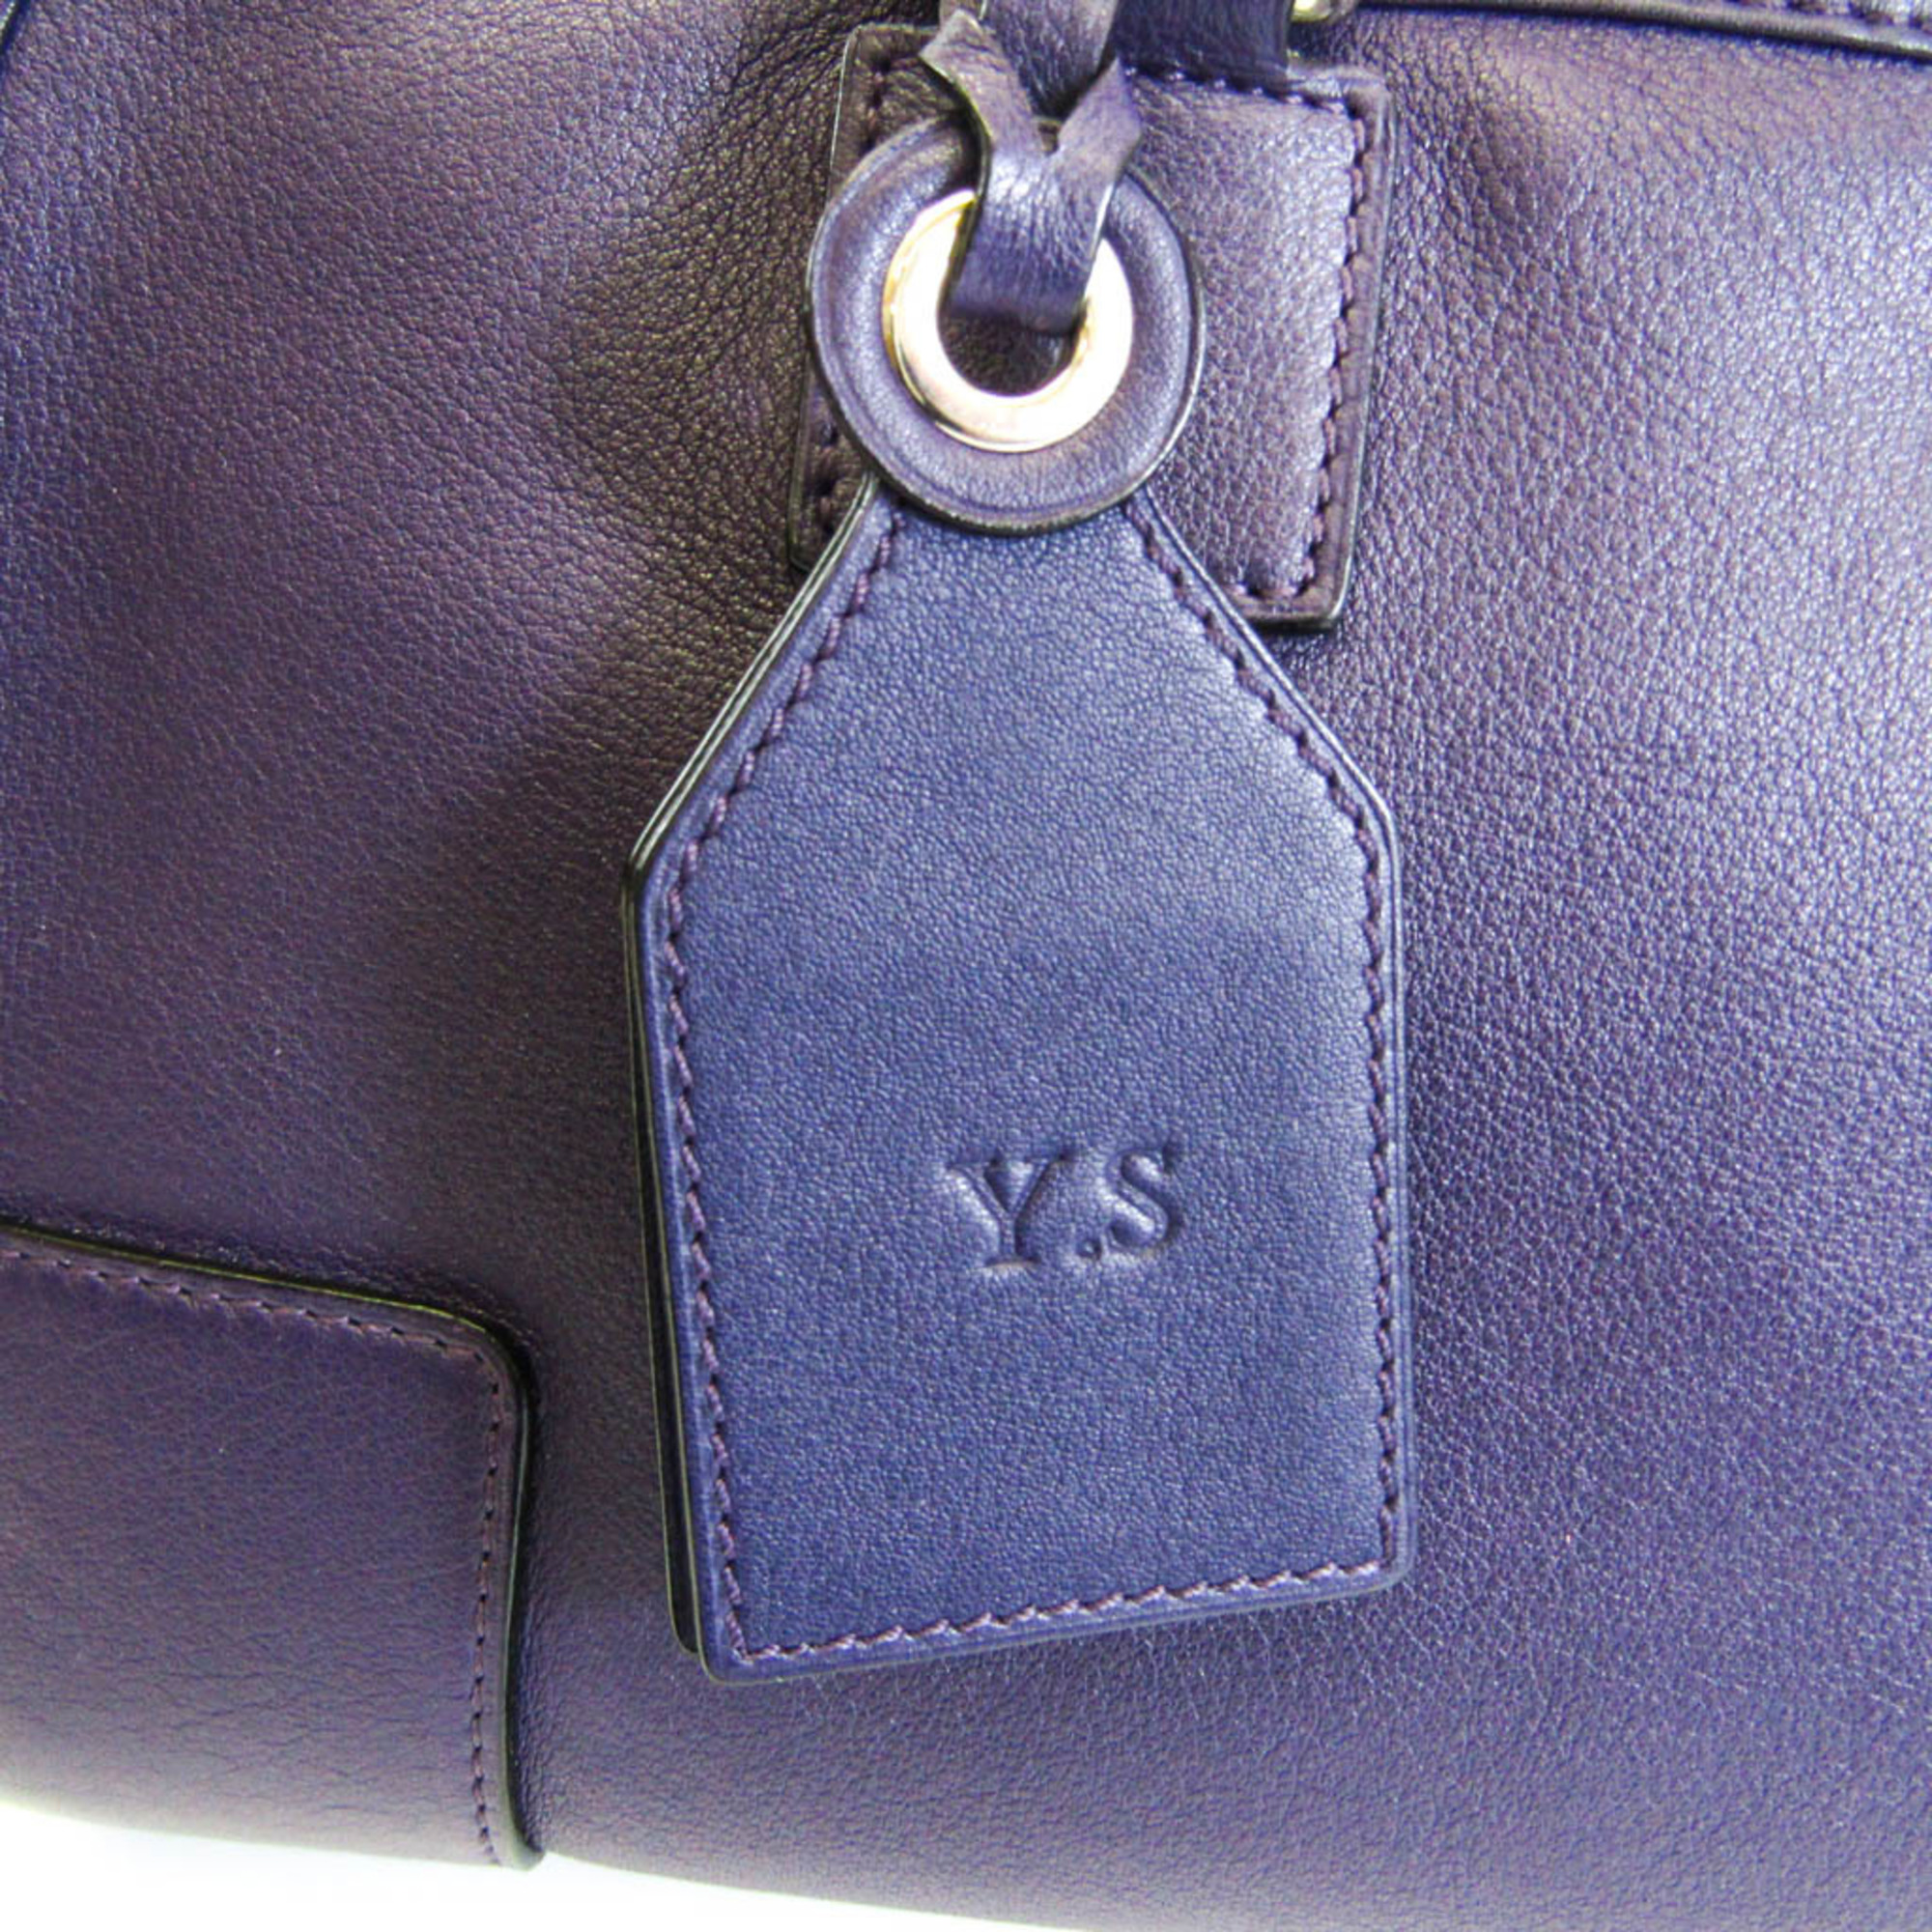 Loewe Amazona 352.30.N03 Women's Leather Handbag,Shoulder Bag Purple